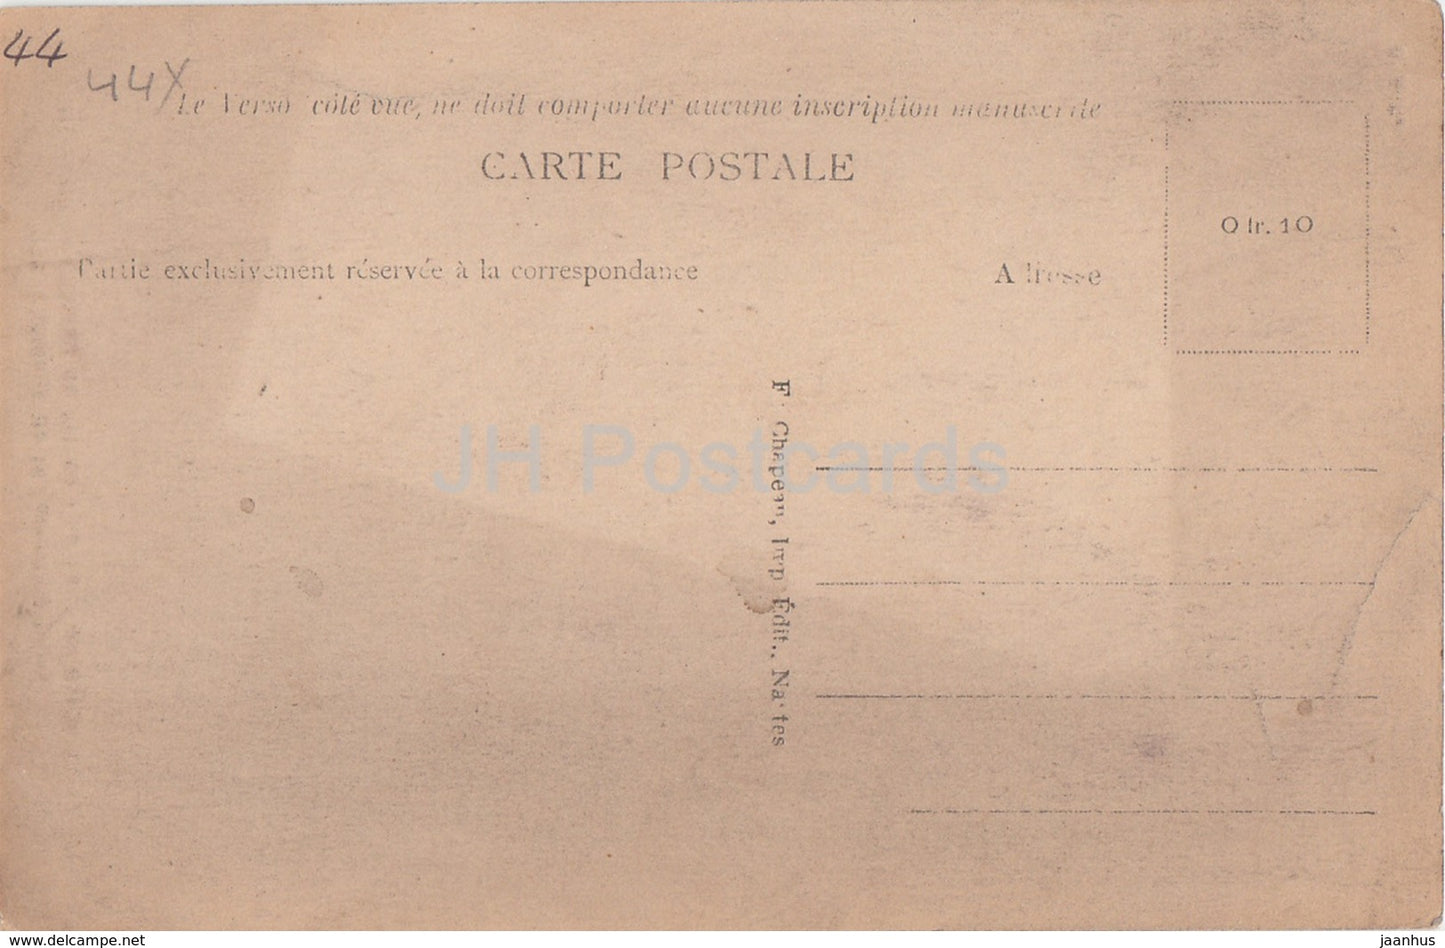 Chemere - Chateau de Prince - La Tour de Barbe Bleue - 233 - castle - old postcard - France - unused